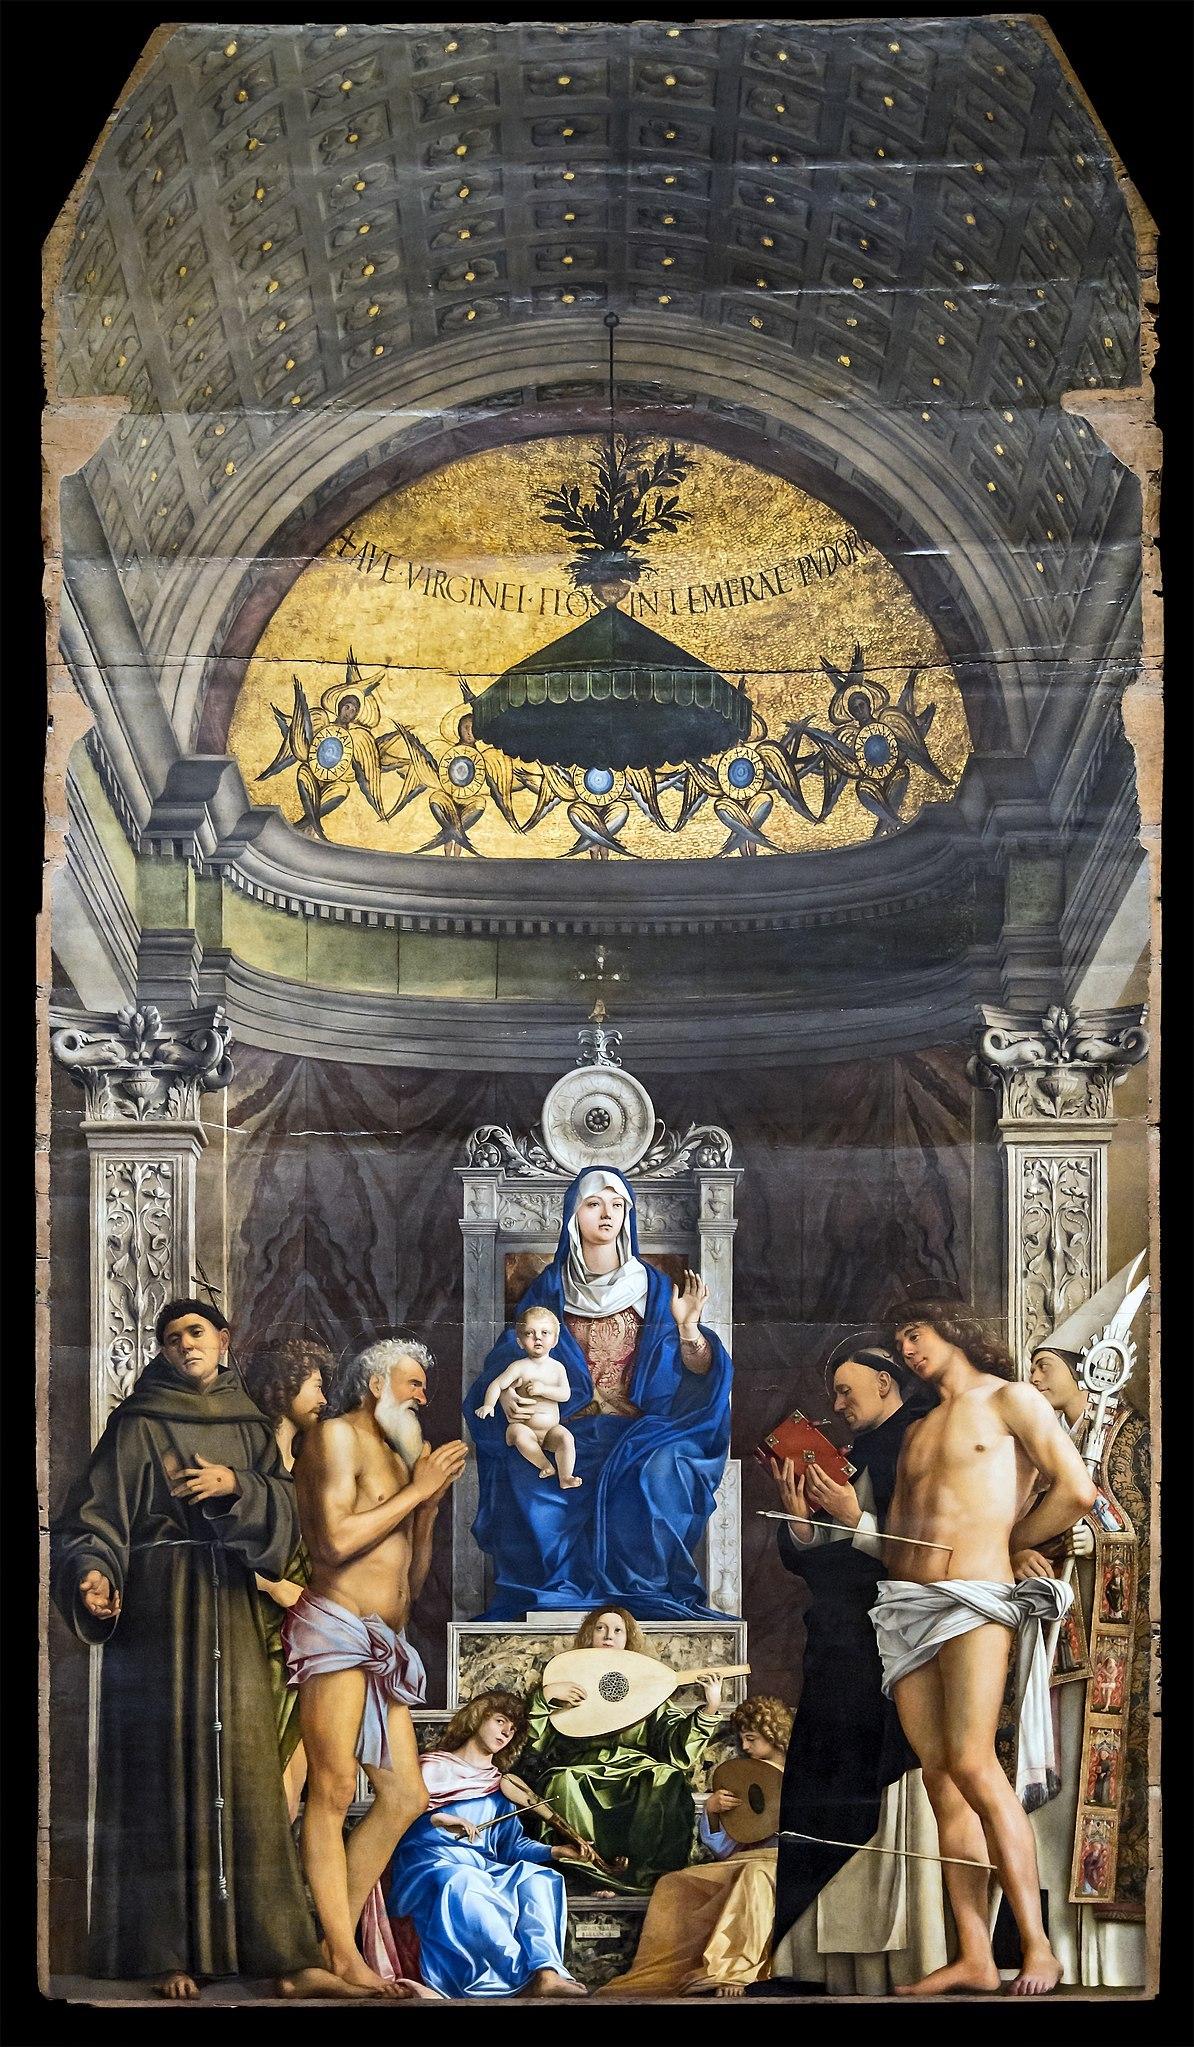 Giovanni Bellini, San Giobbe Altarpiece, 1487. Oil on Panel. Gallerie dell’Accademia in Venice.